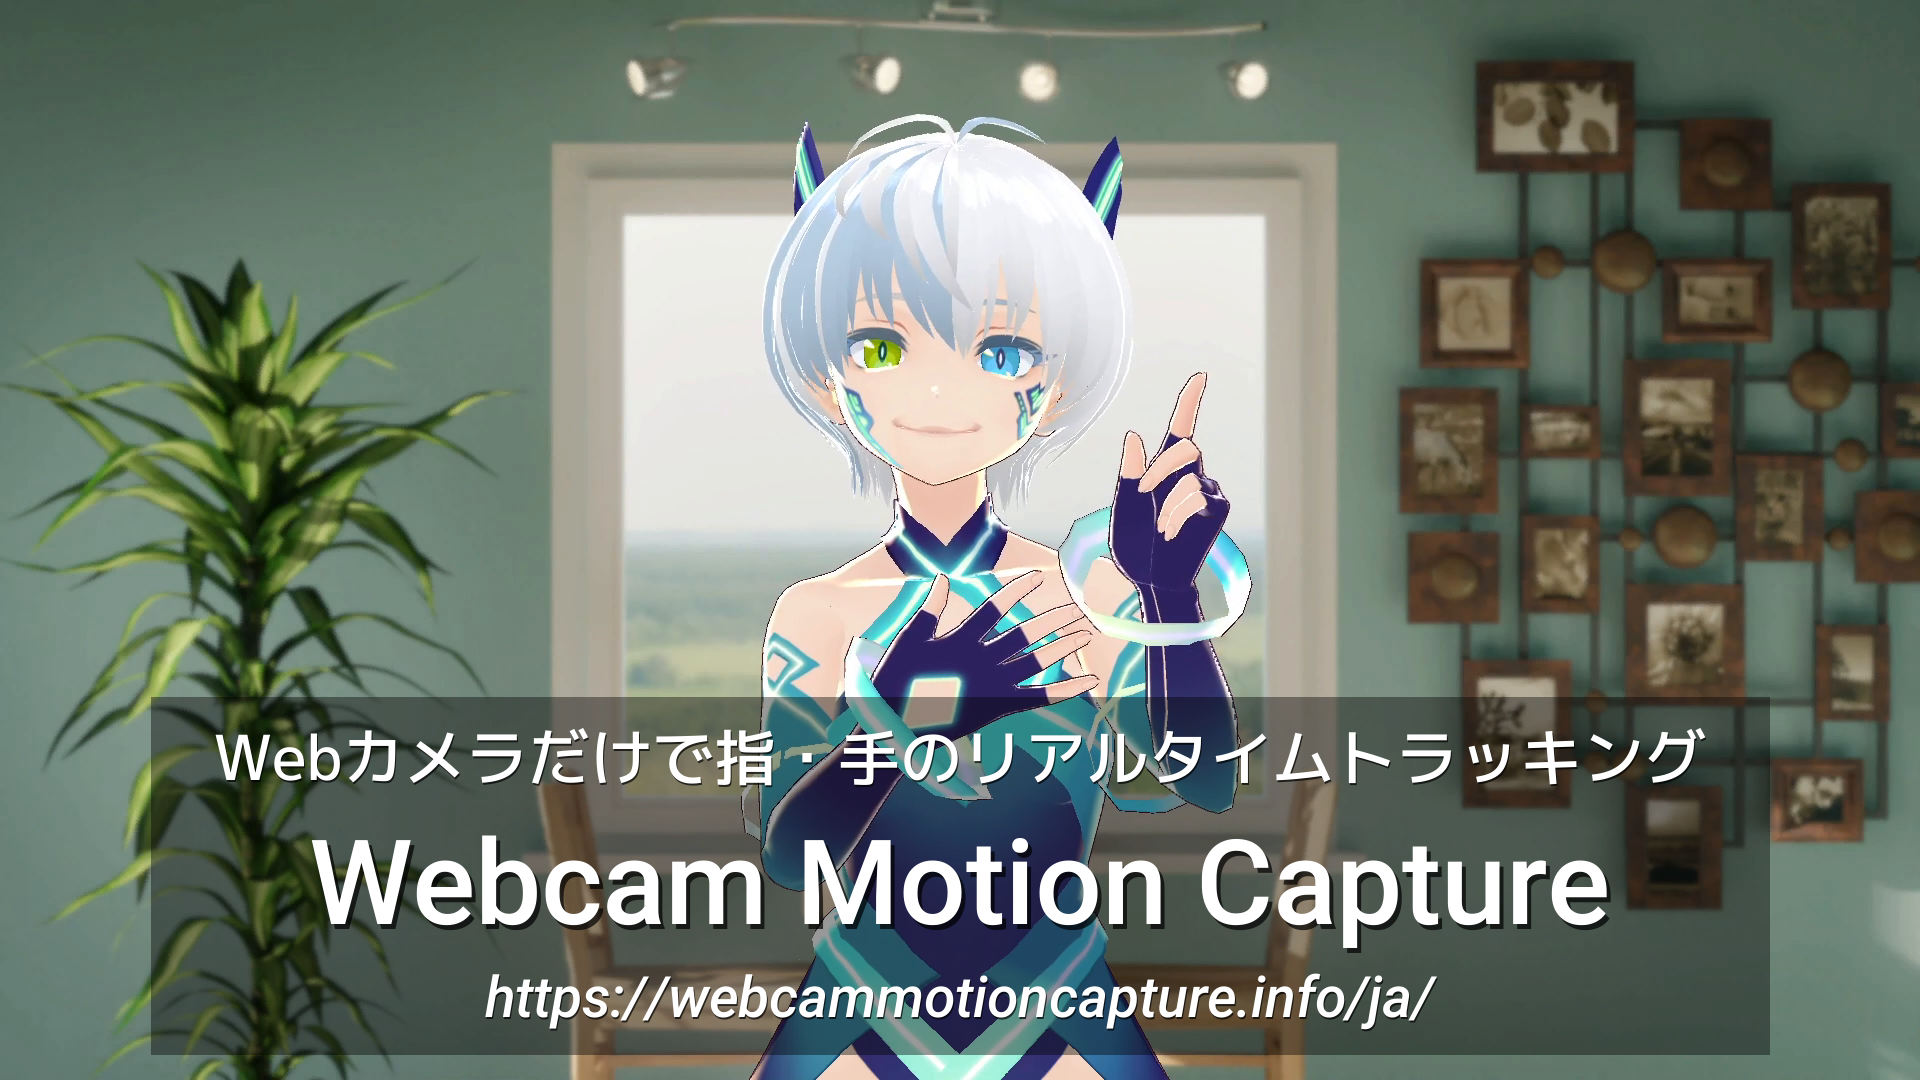 Webcam Motion Capture